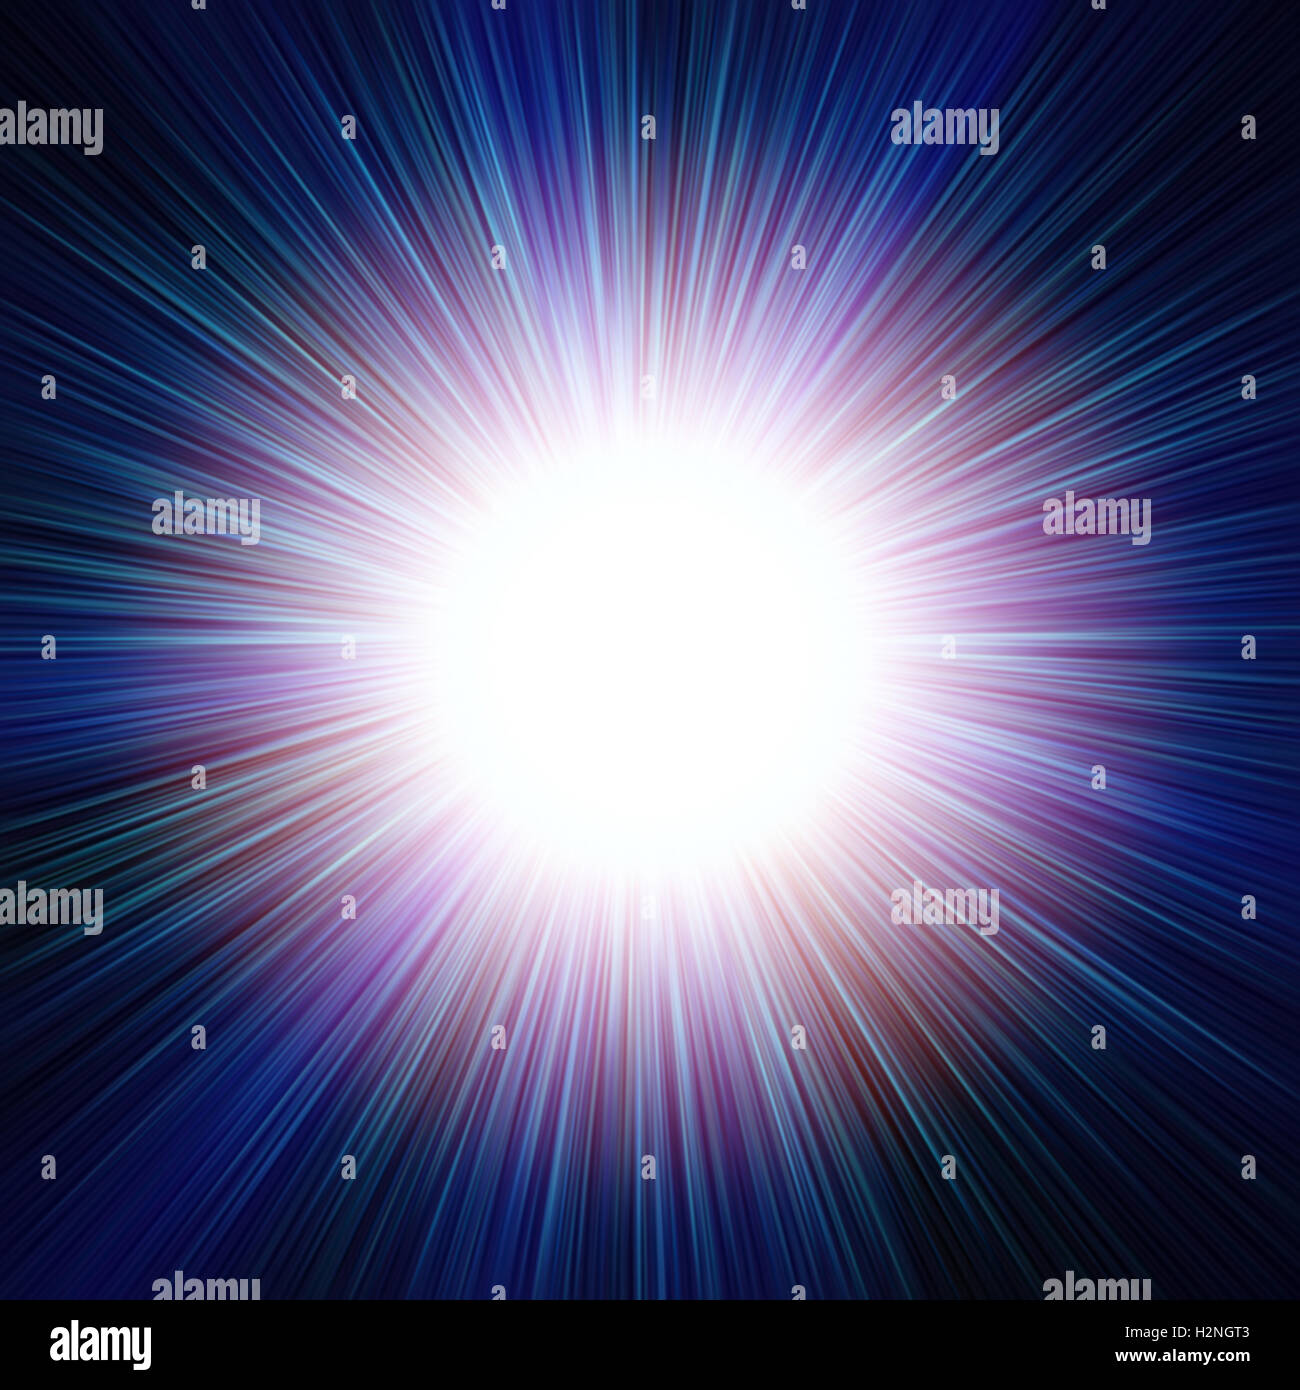 Abstract Background (Sfondo) illustrazione cosmica che rappresenta un modello di raggiera o sunburst o burst di supernova closeup Foto Stock